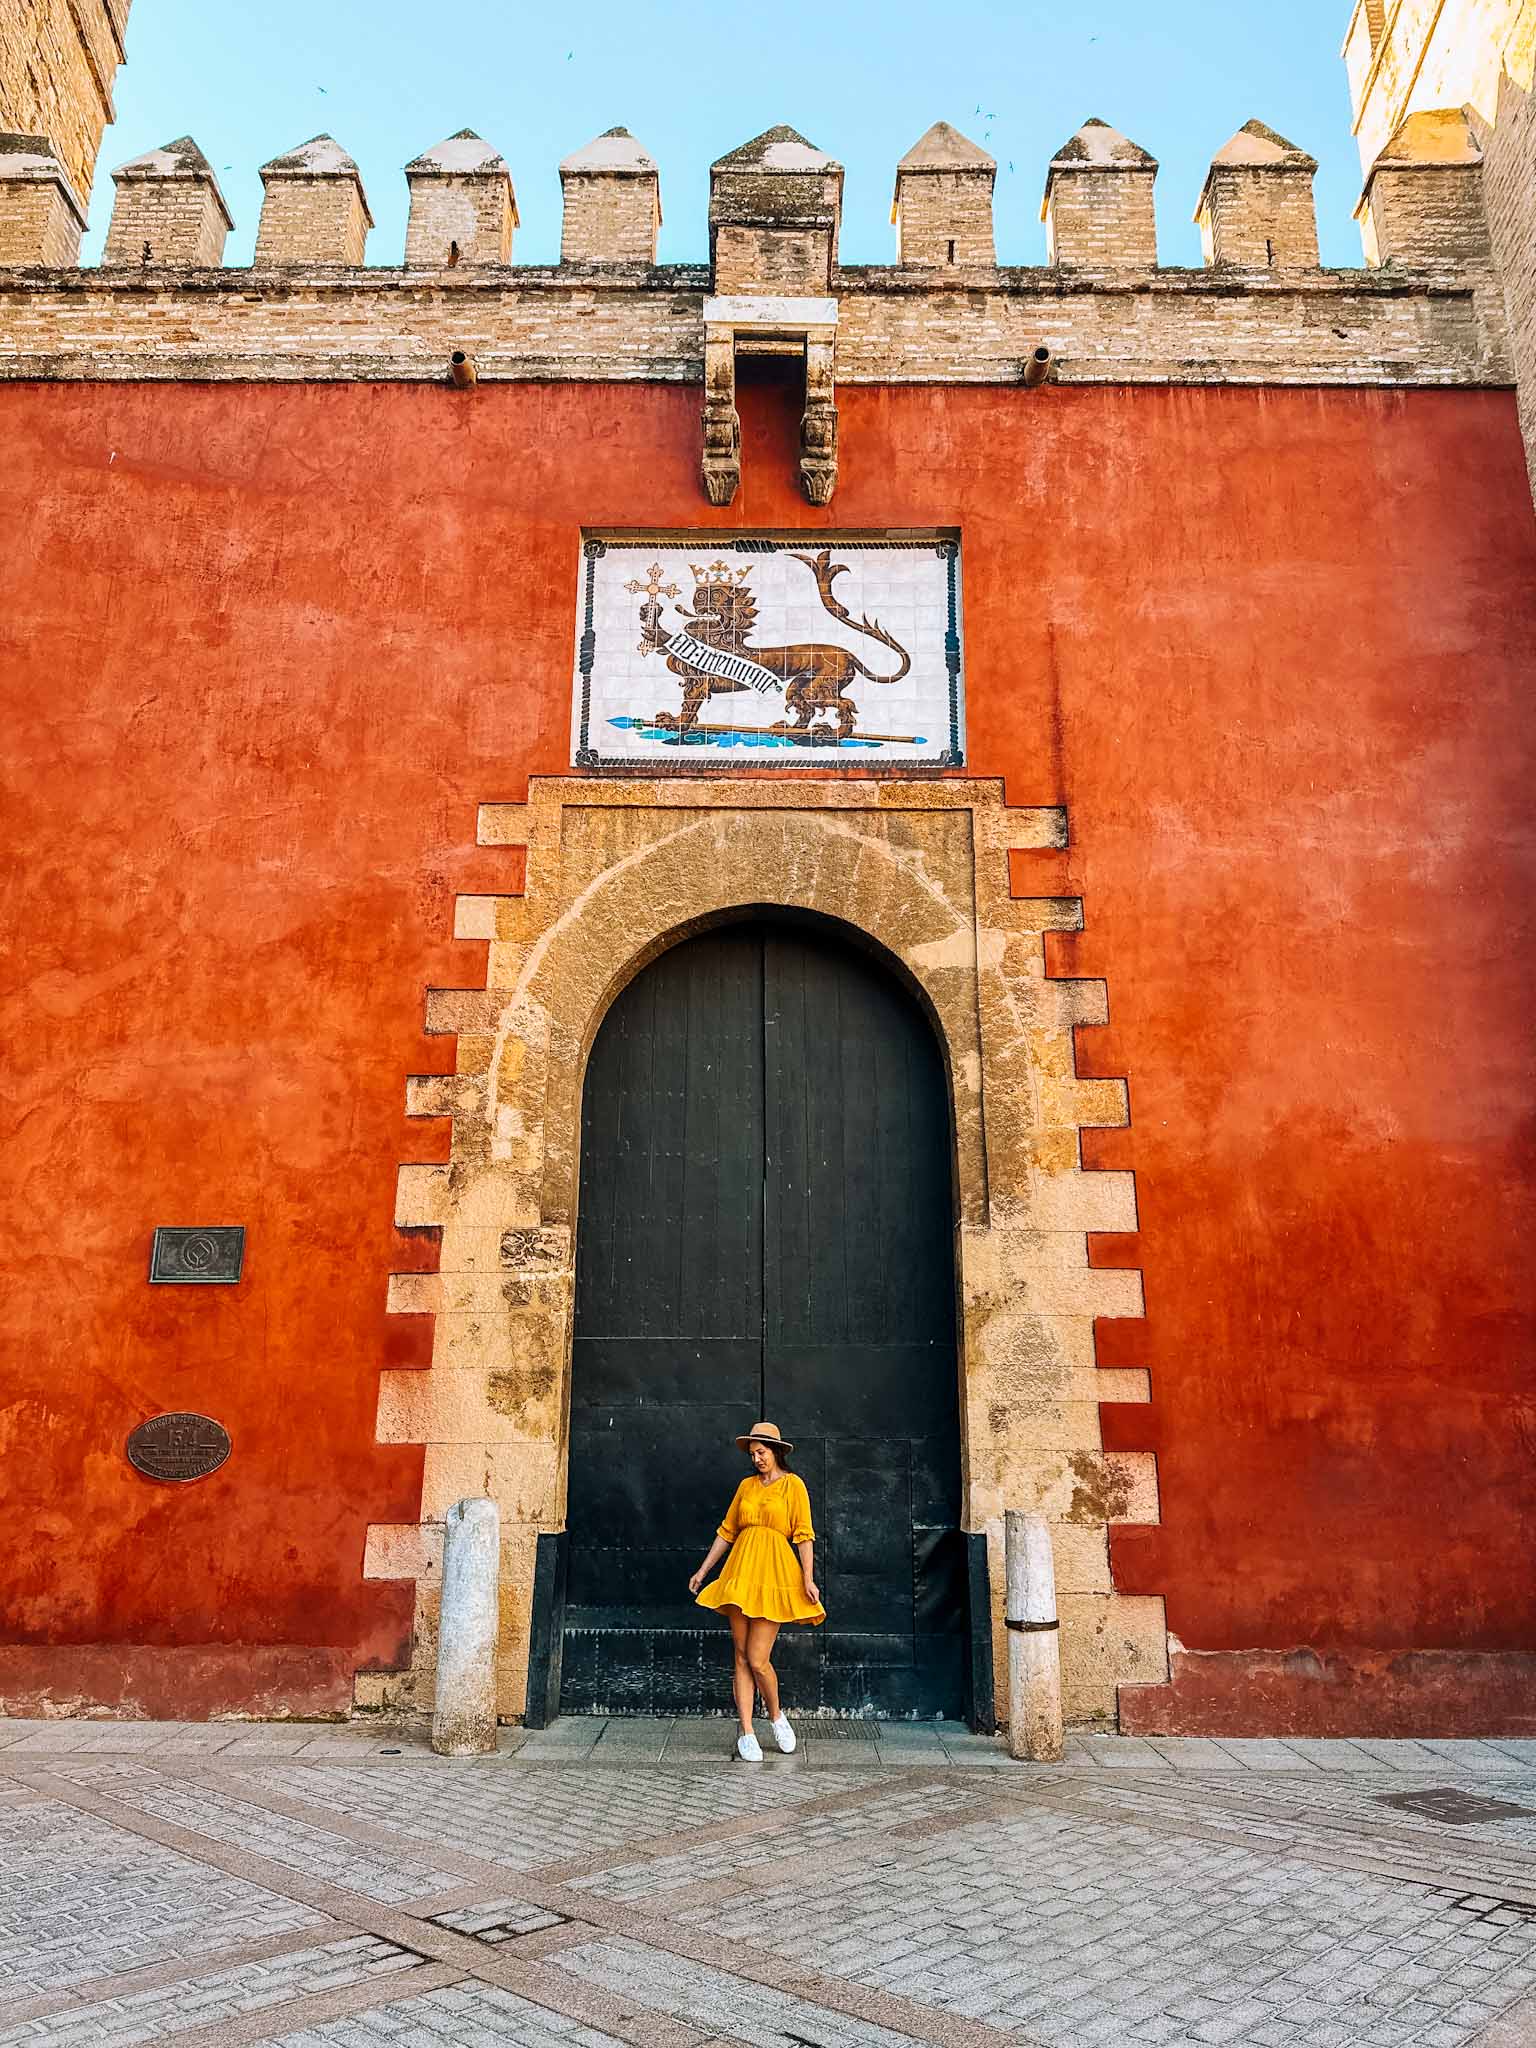 Best Instagram spots in Seville, Spain